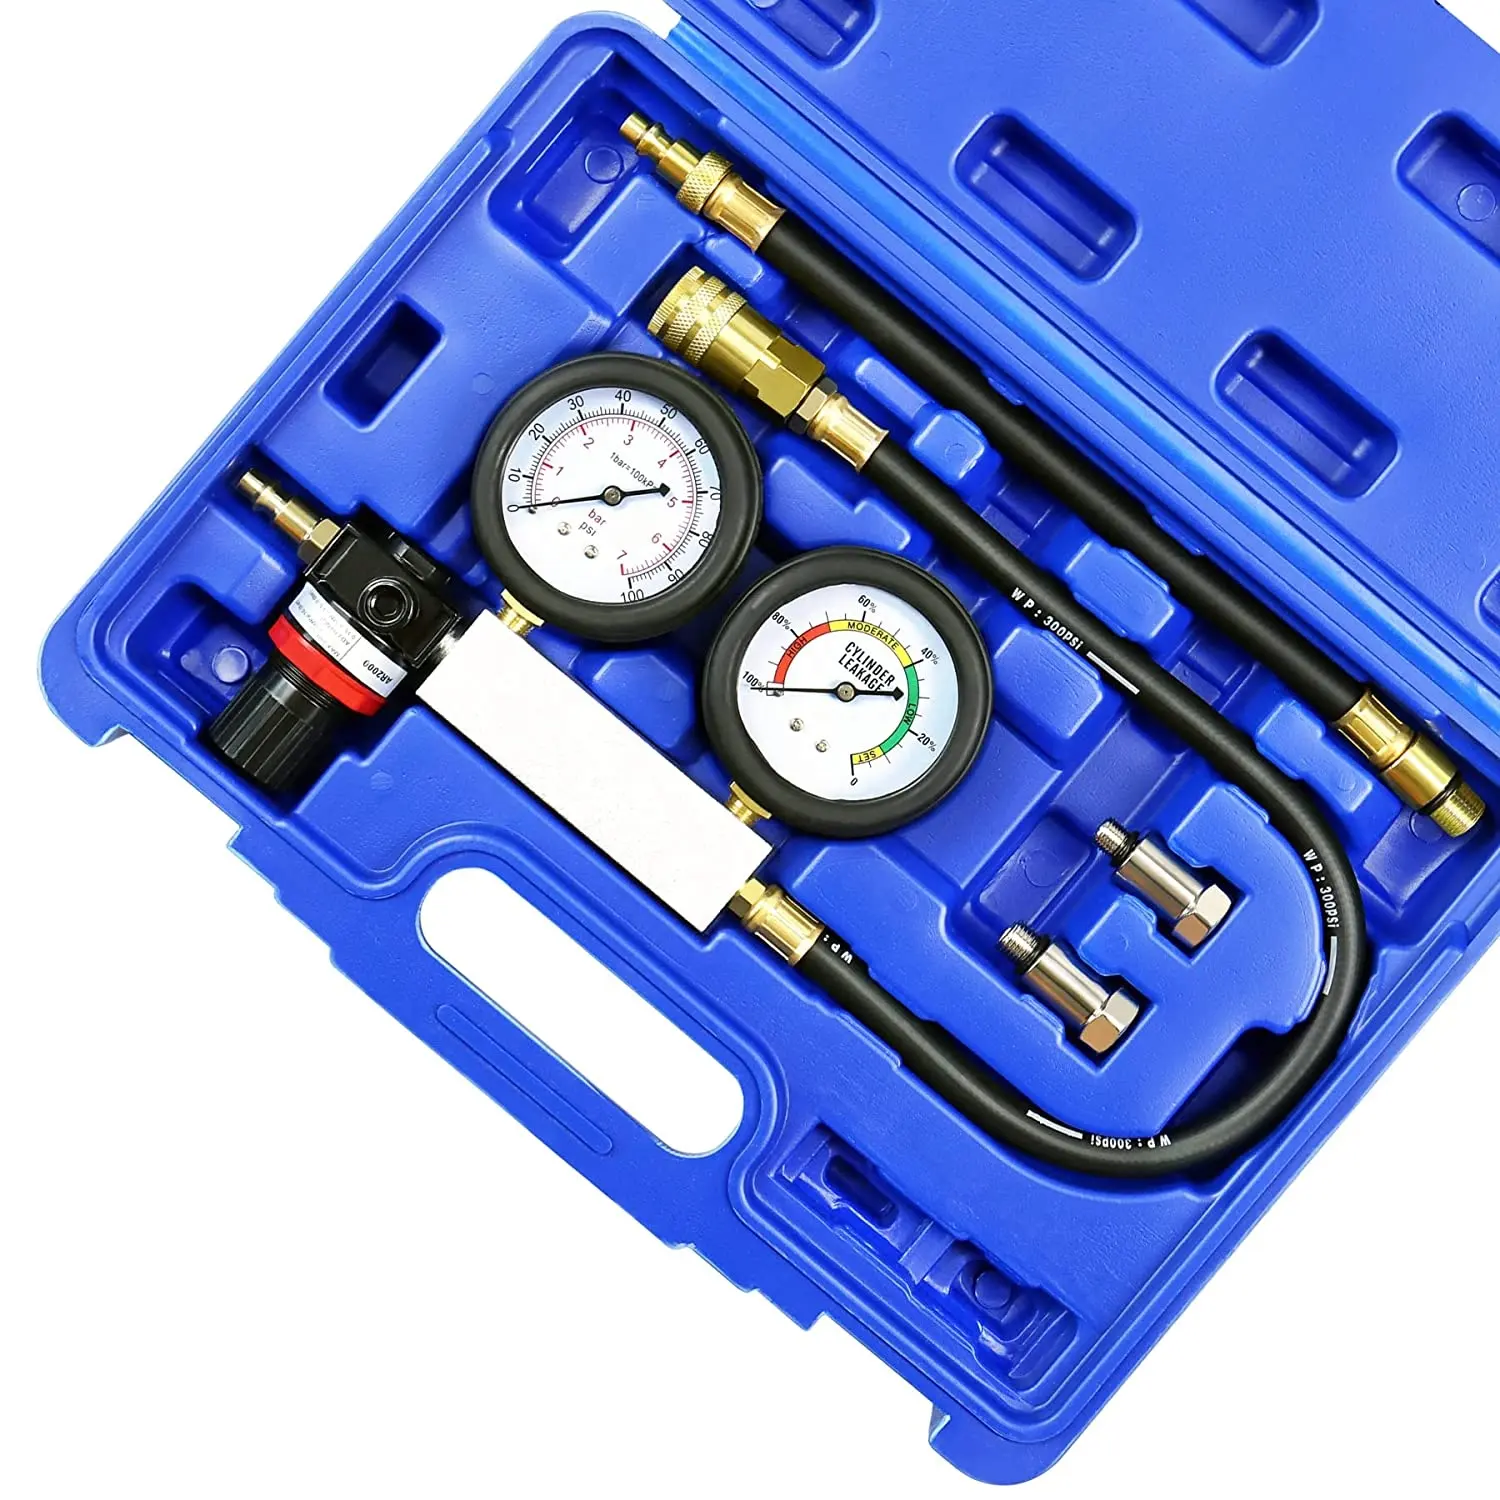 Viktec kit de medição de pressão dupla, profissional, medidor de compressão do motor 5pc, cilindro, vazamento, kit testador para carro, caminhão, motocicleta